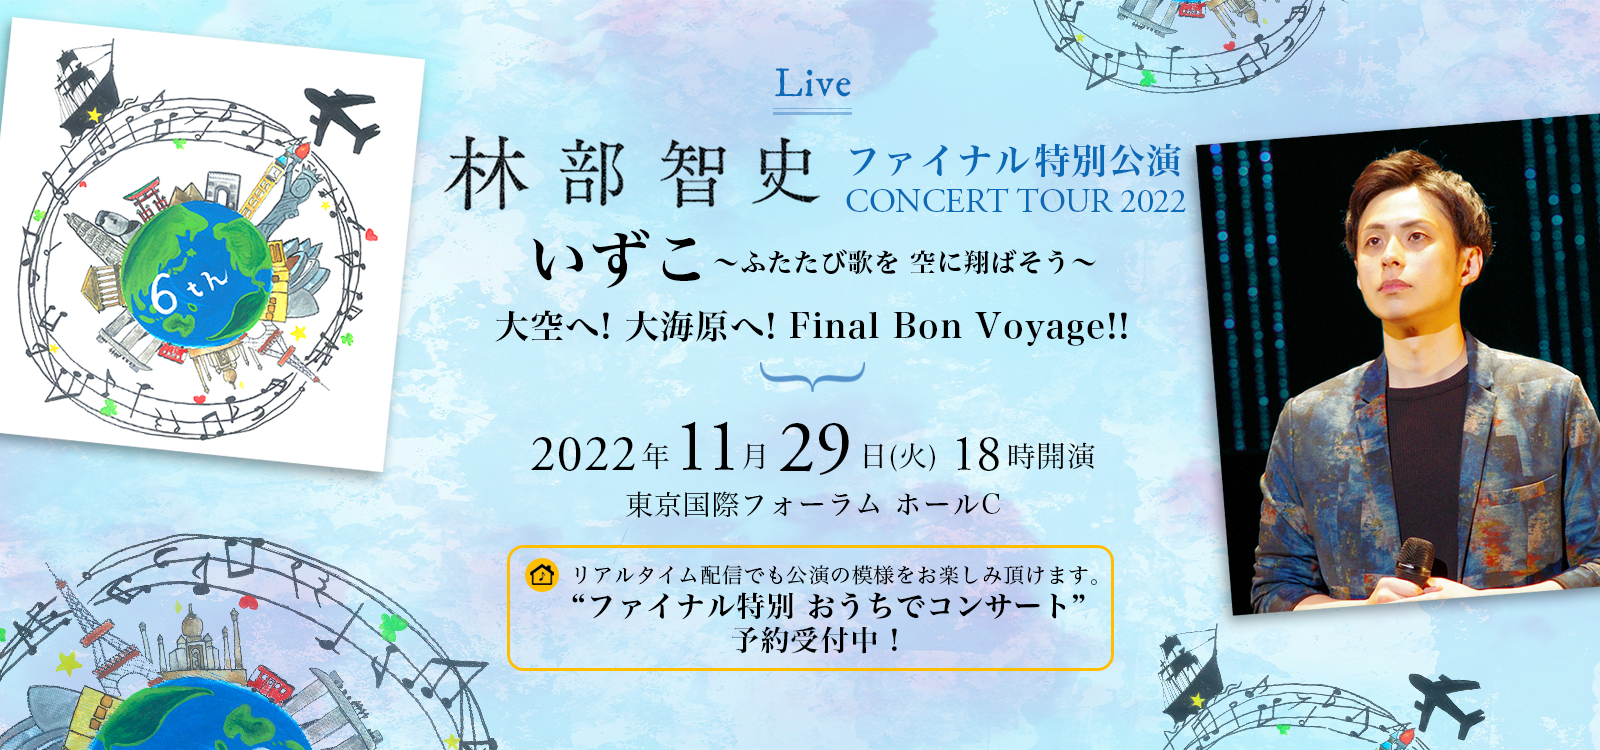 ファイナル特別公演 林部智史 CONCERT TOUR 2022 いずこ ～ふたたび歌を 空に翔ばそう～ 大空へ！大海原へ！Final Bon Voyage！！